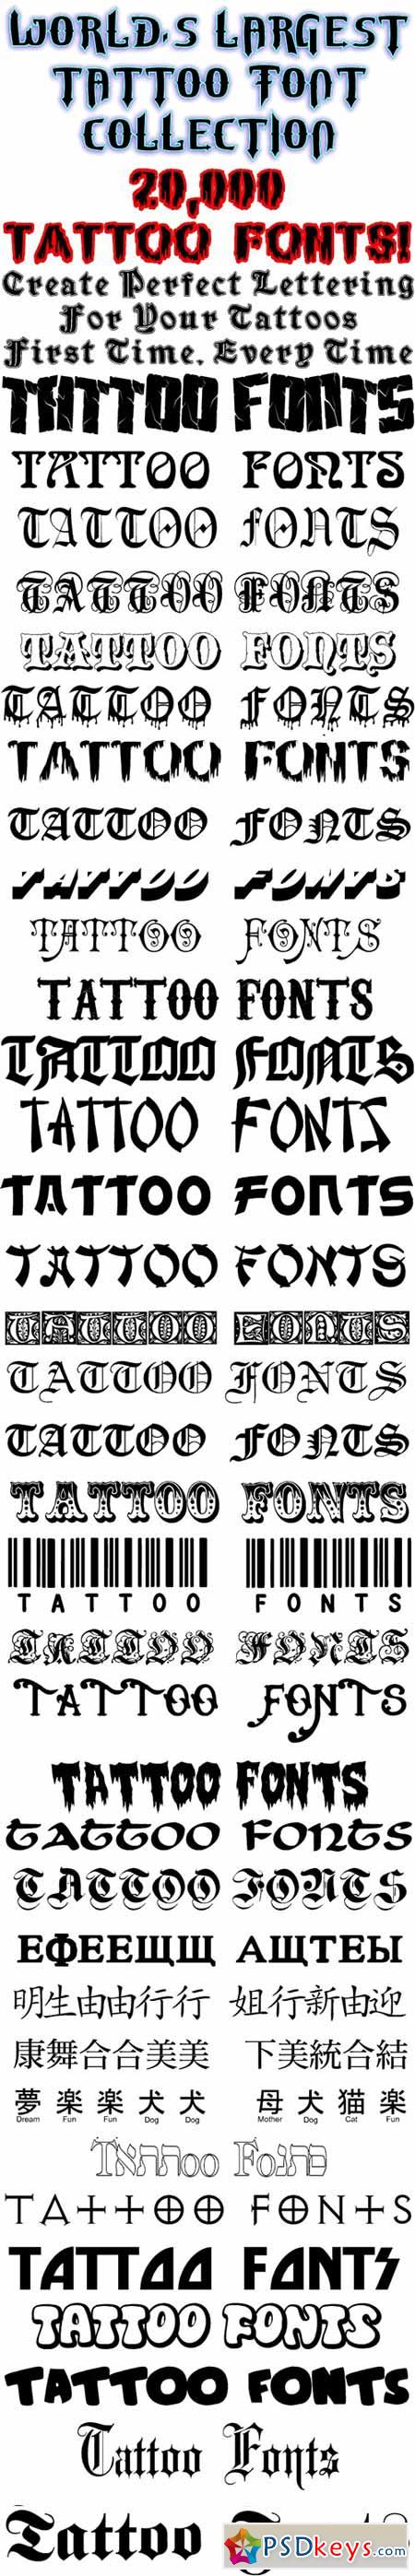 20.000 Tattoo Fonts